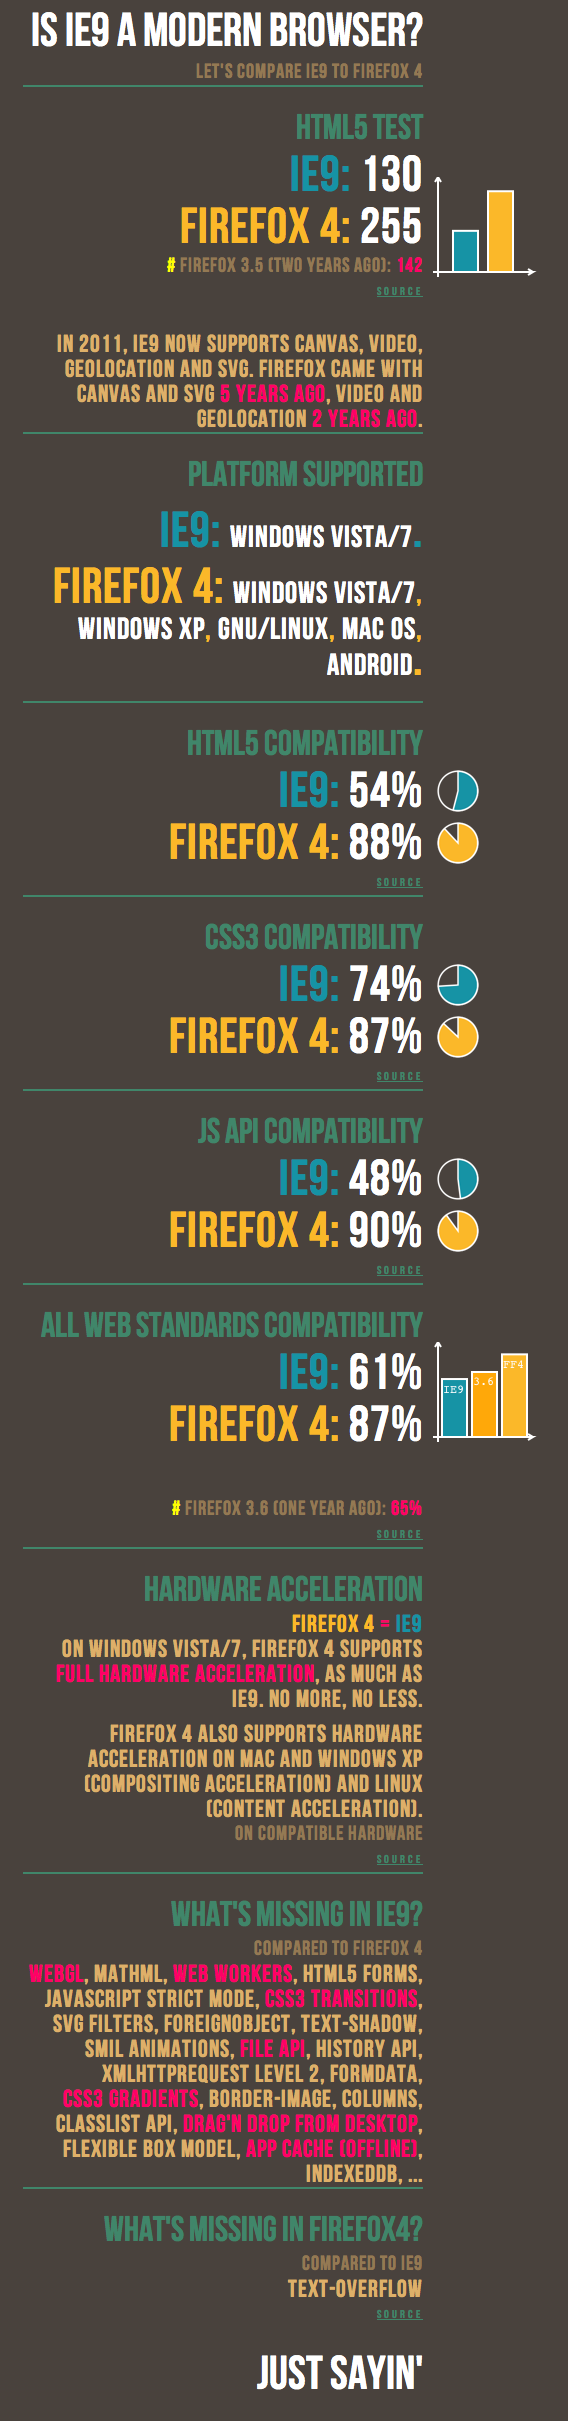 IE9 vs Firefox 4